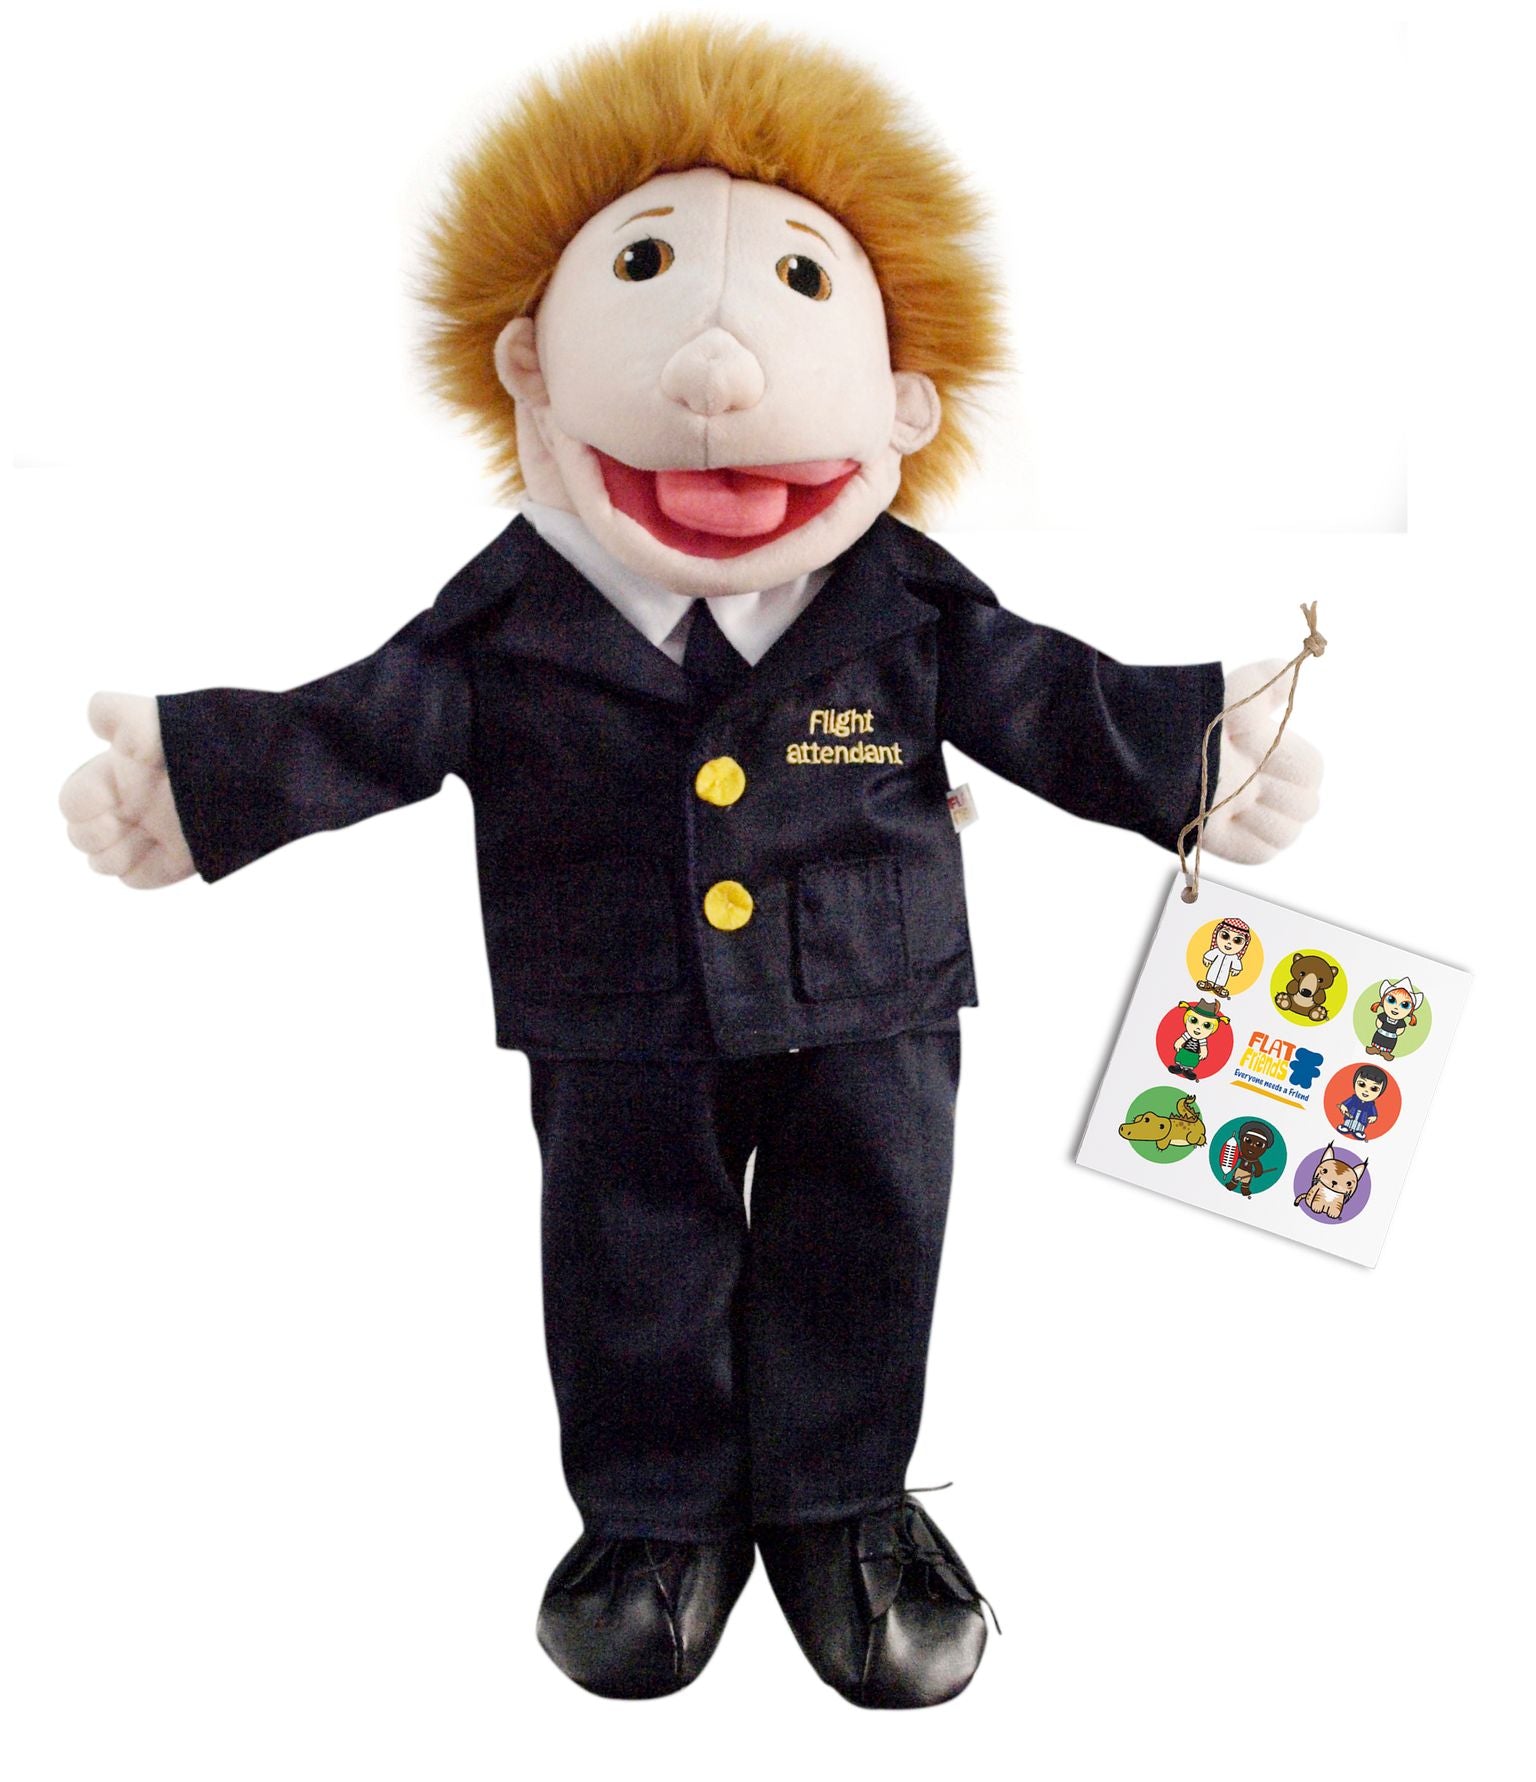 Hand Puppet - Boy, Dressed as a Flight Attendant